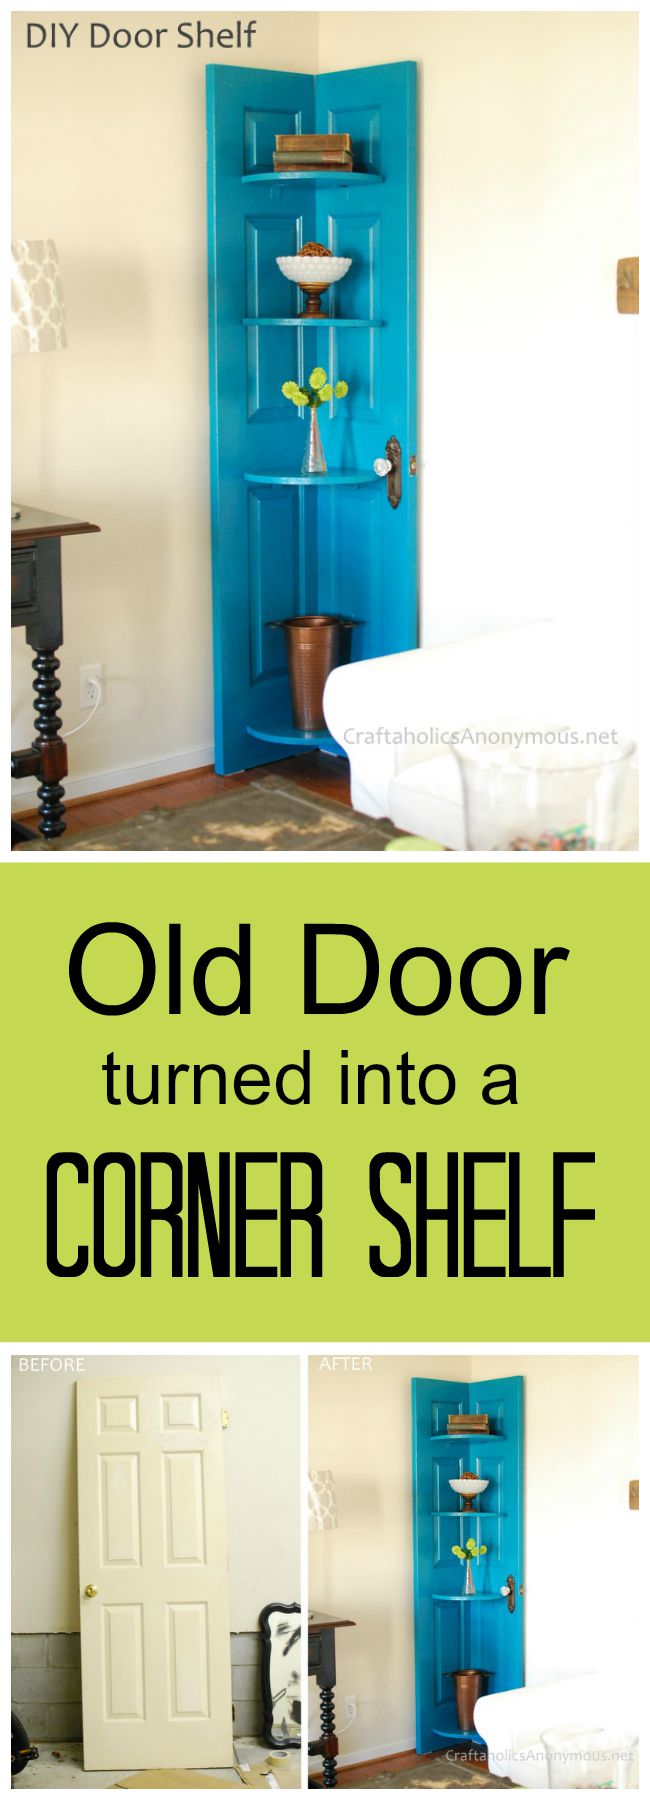 DIY Corner Shelf from an Old Door